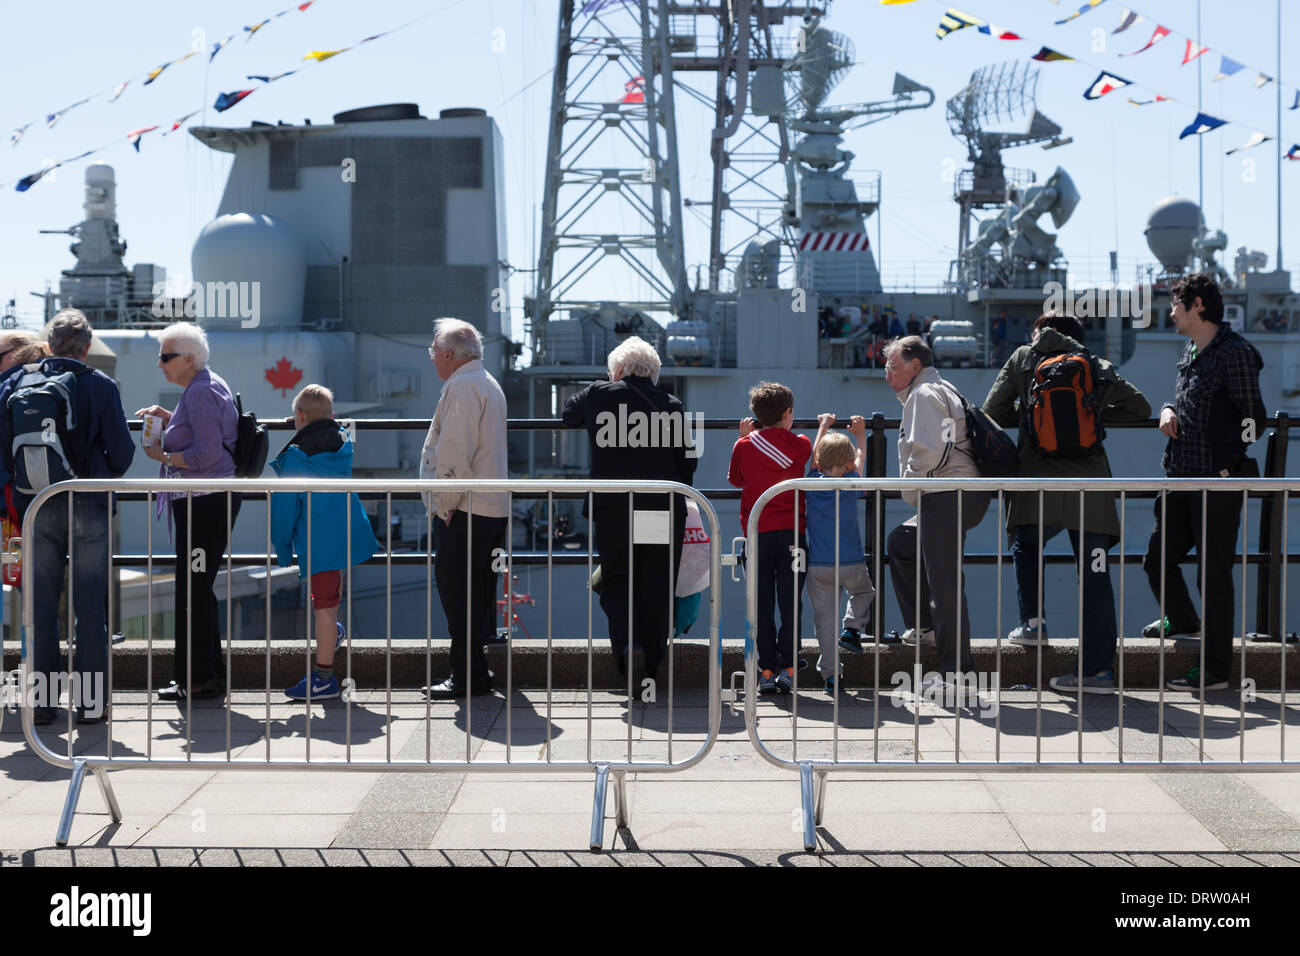 Menschen Schlange stehen, um Board kanadischen Zerstörer HMCS Iriquois in Liverpool zum 70. Jahrestag der Schlacht des Atlantiks Stockfoto